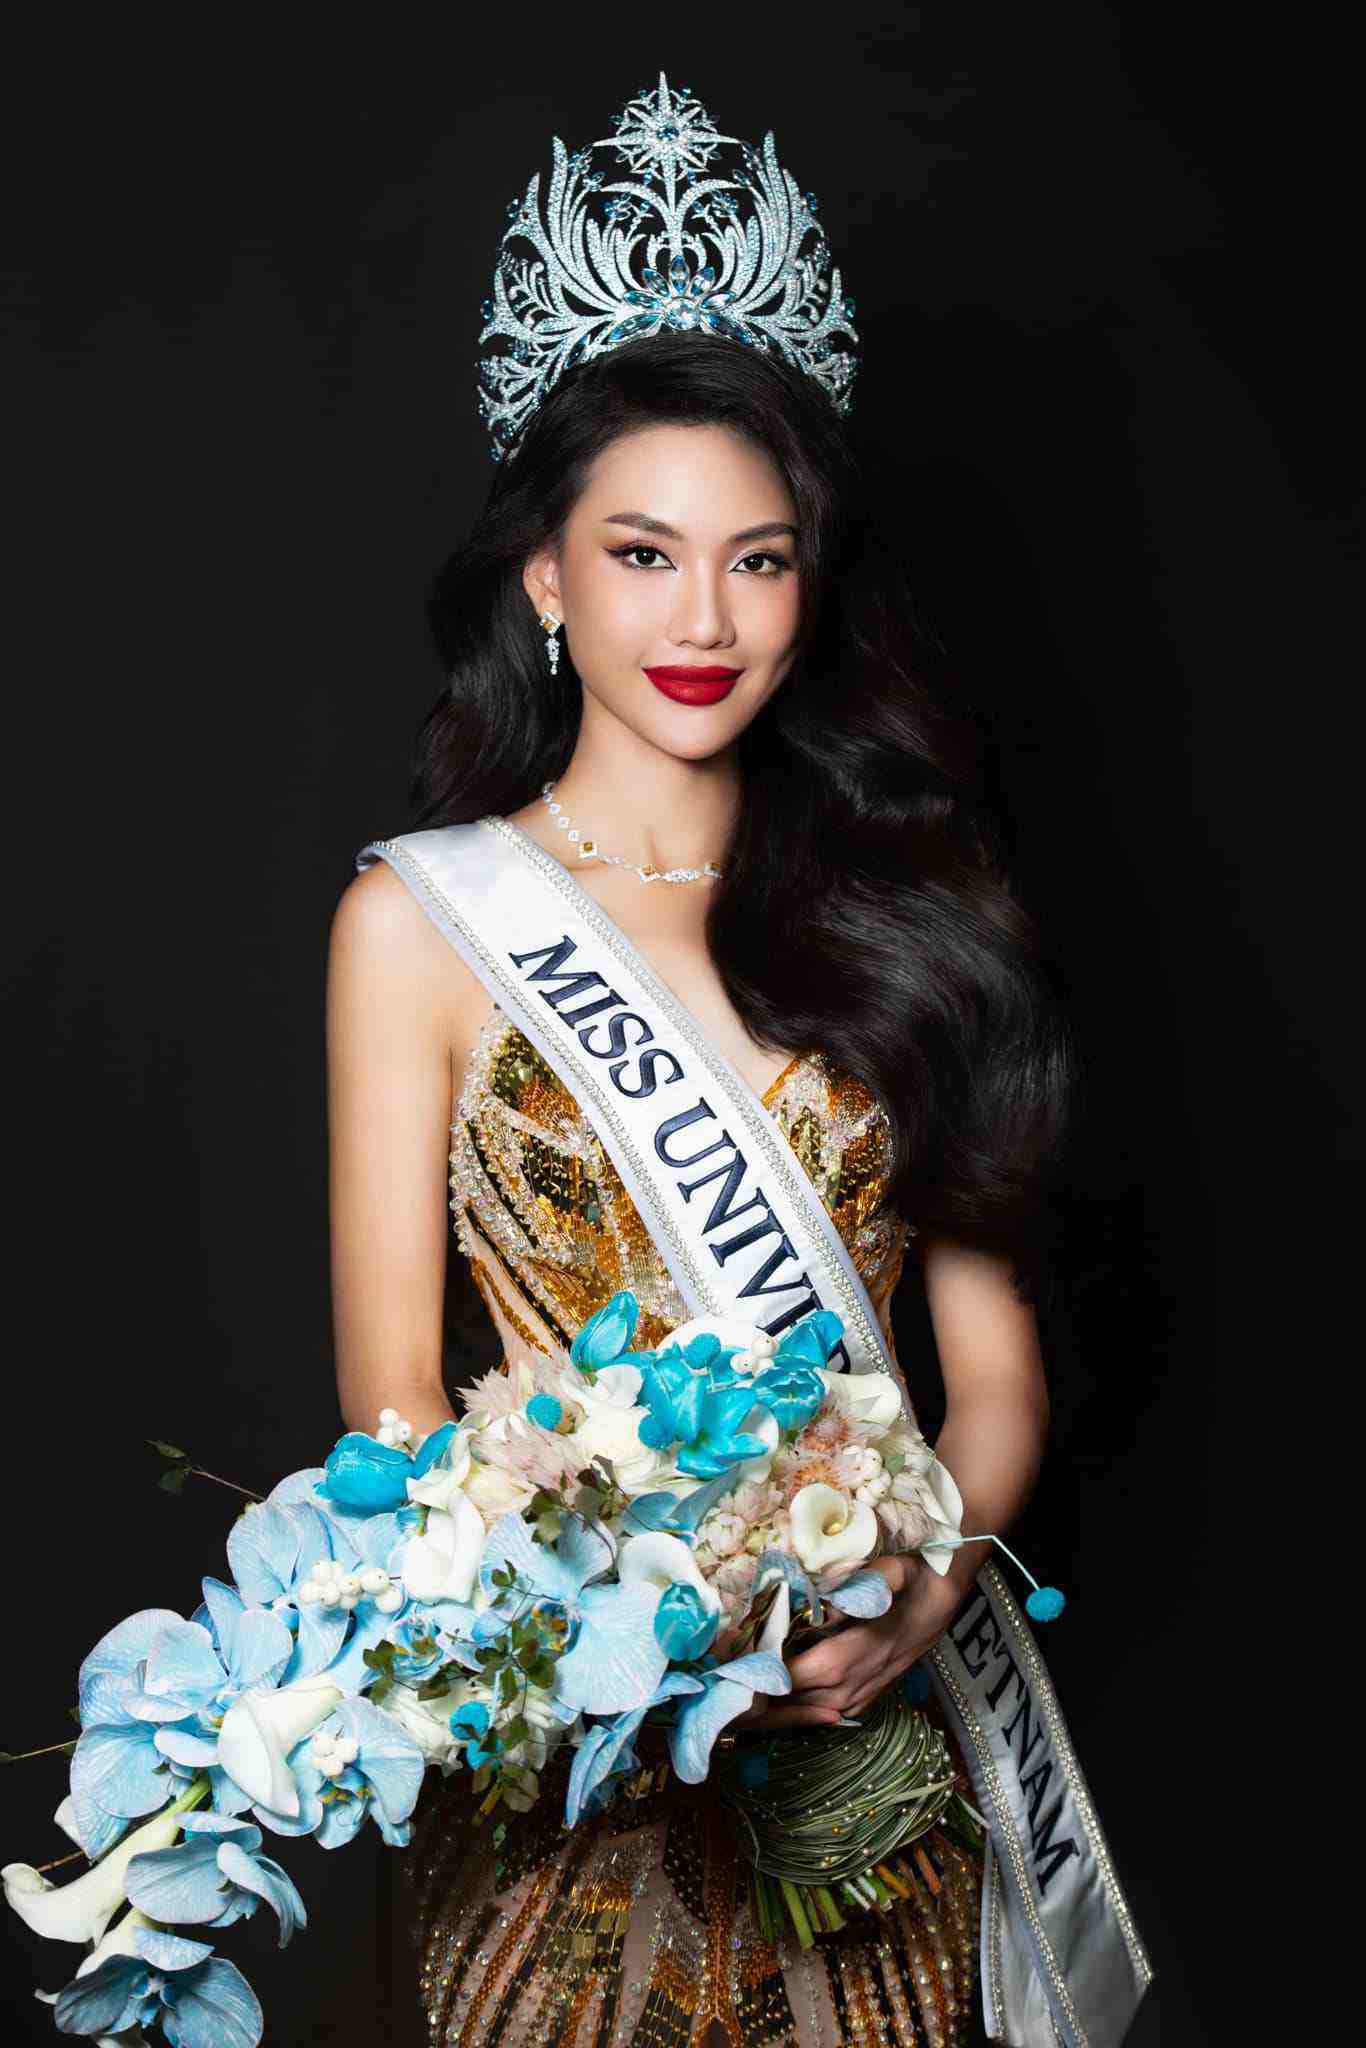 Miss Universe Vietnam xác nhận hoa hậu Quỳnh Hoa từng sử dụng bóng cười - 1